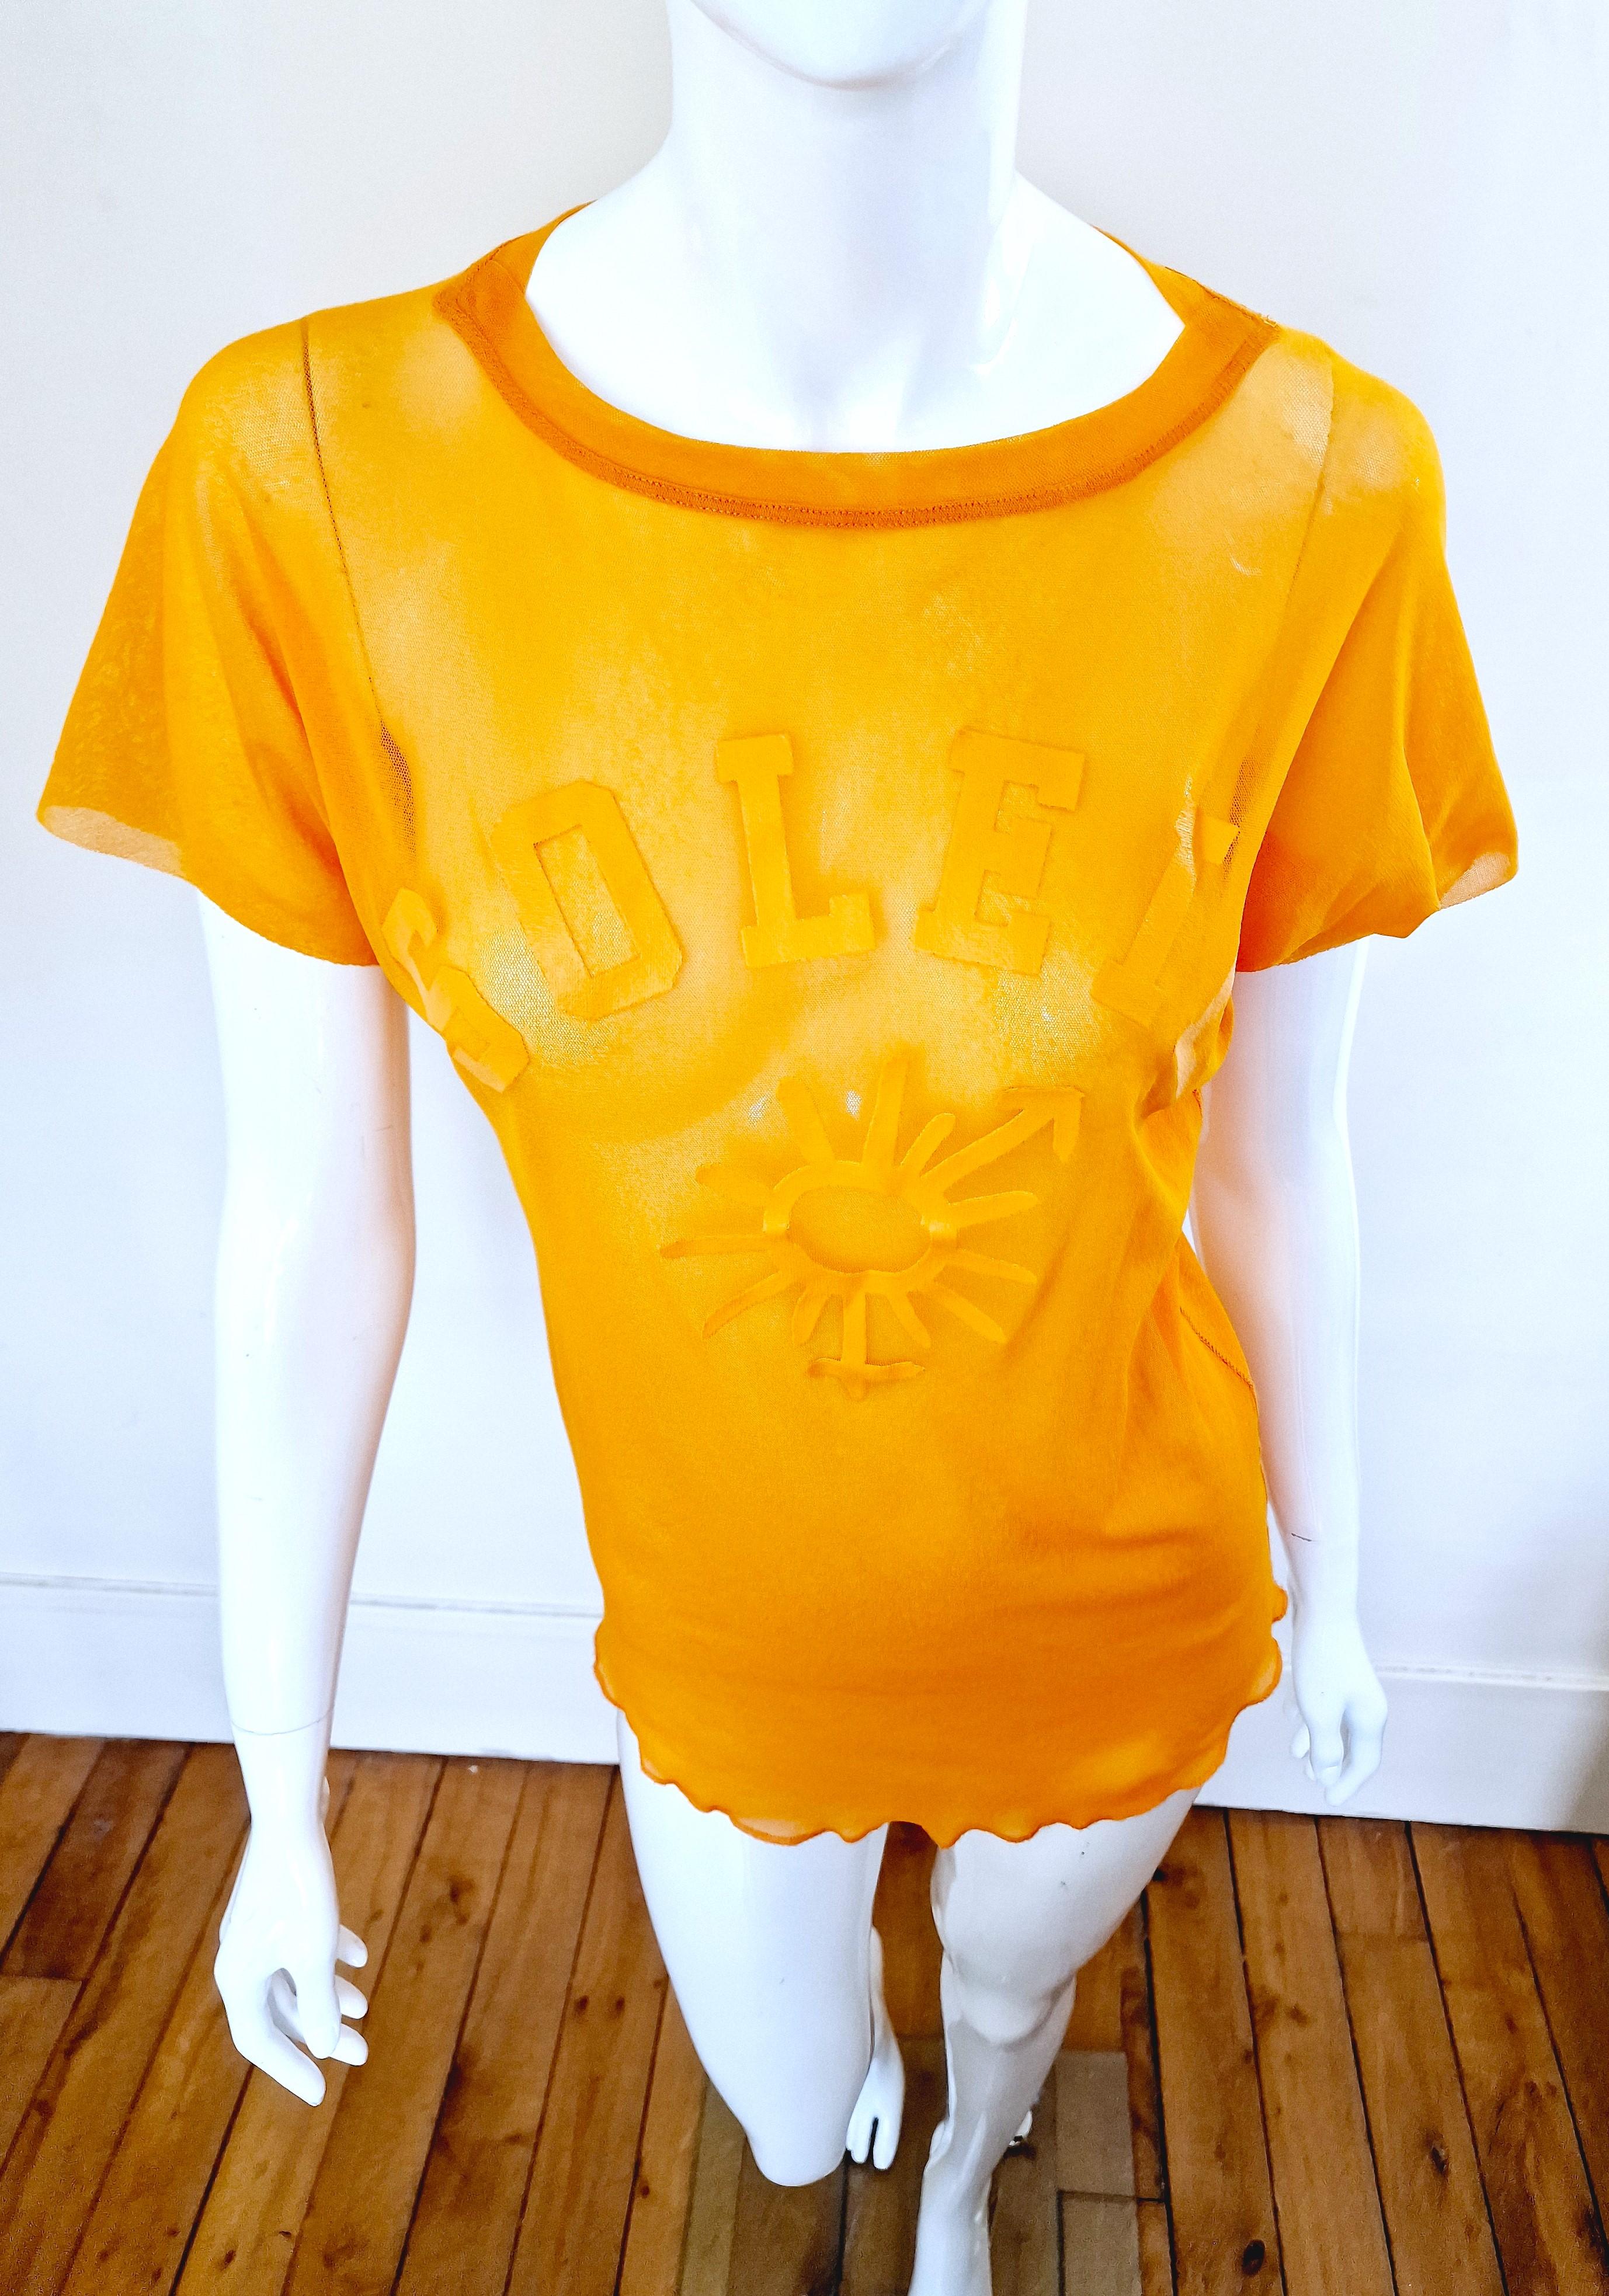 Jean Paul Gaultier Sex Sybmol Soleil Orange Logo Text Men Shirt Large XL Top For Sale 2